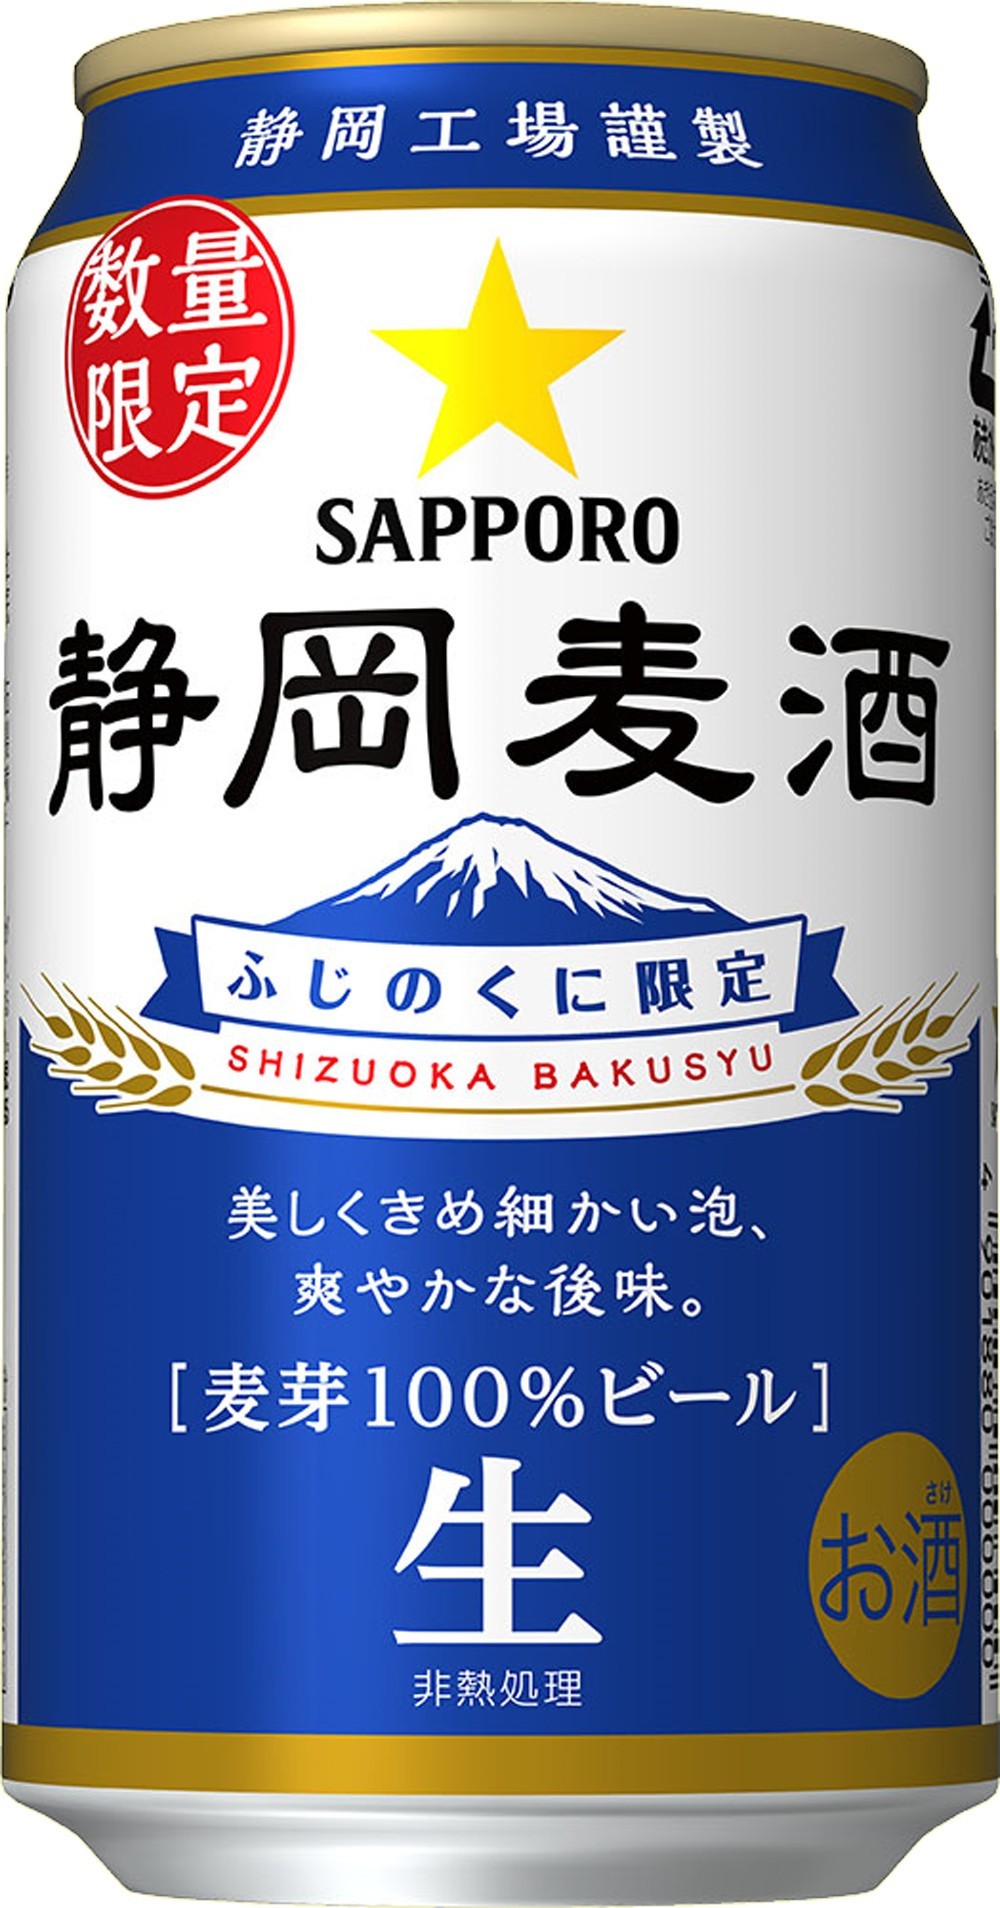 県内限定「静岡麦酒」の缶ビールを7月12日から期間限定販売